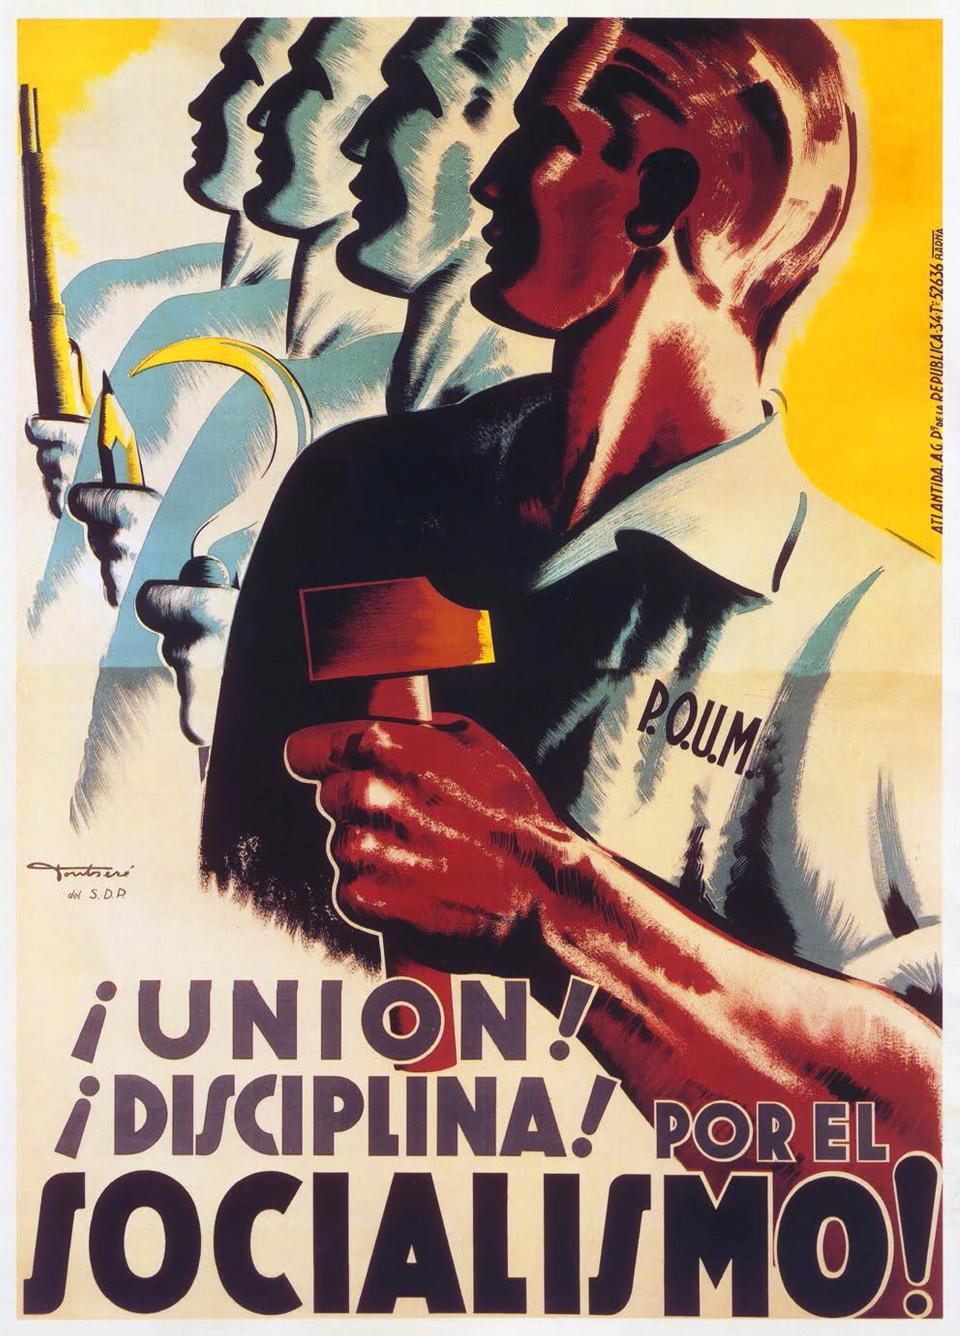 “¡Unión! ¡Disciplina! ¡Por el socialismo!”